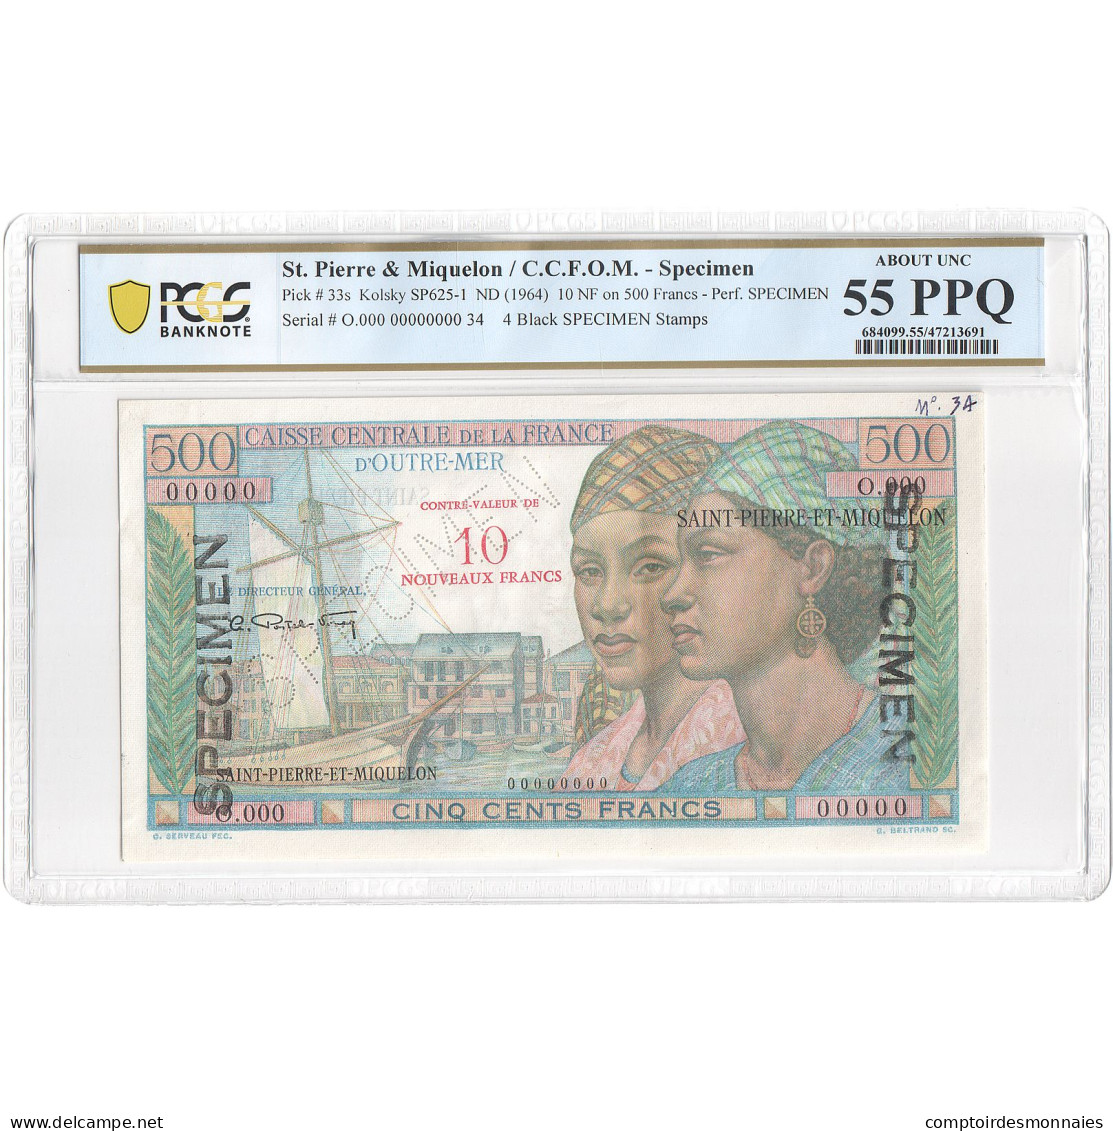 Saint-Pierre-et-Miquelon, 10 Nouveaux Francs On 500 Francs, Pointe-à-Pitre - Specimen